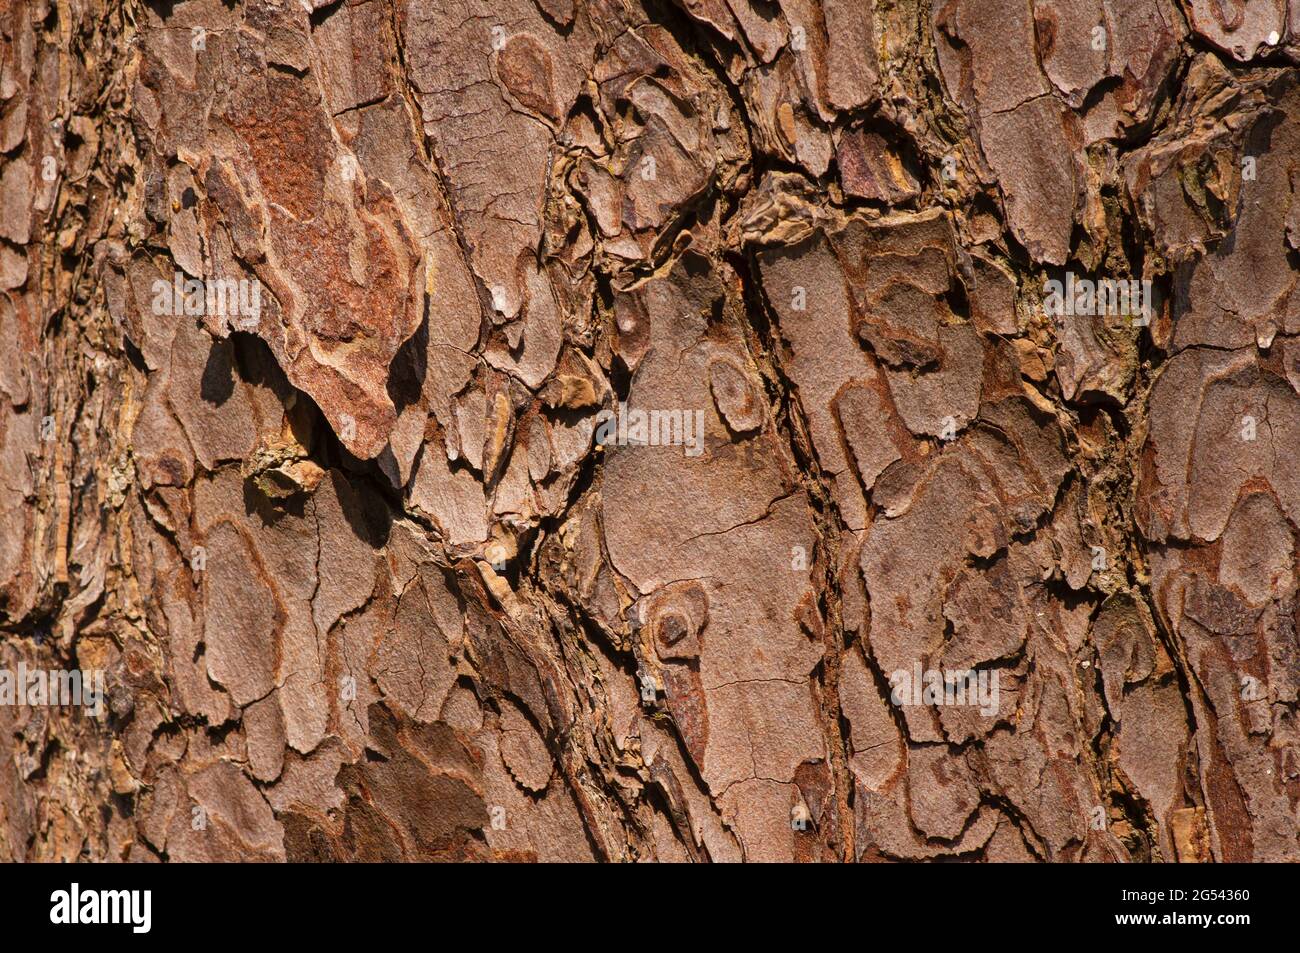 The surface of an old Mahogany (Swietenia mahagoni) tree bark for natural background Stock Photo